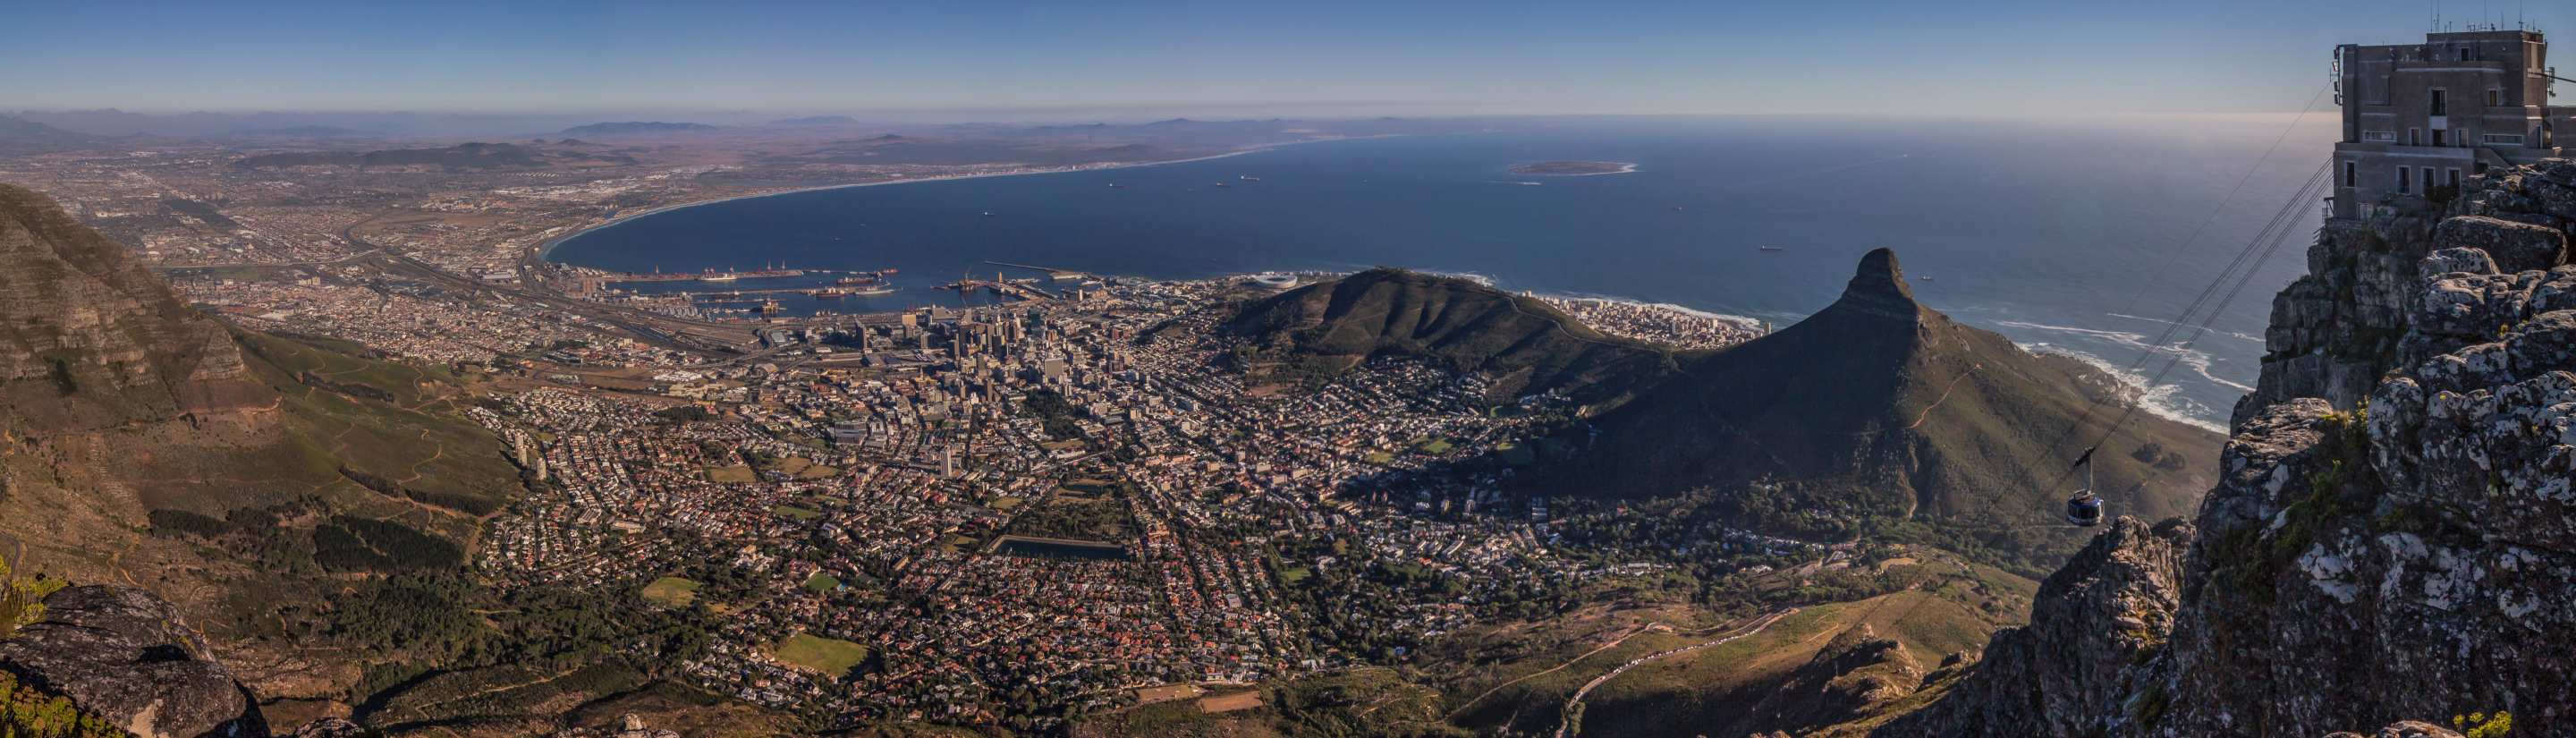 Kapstadt - die Mutterstadt Südafrikas